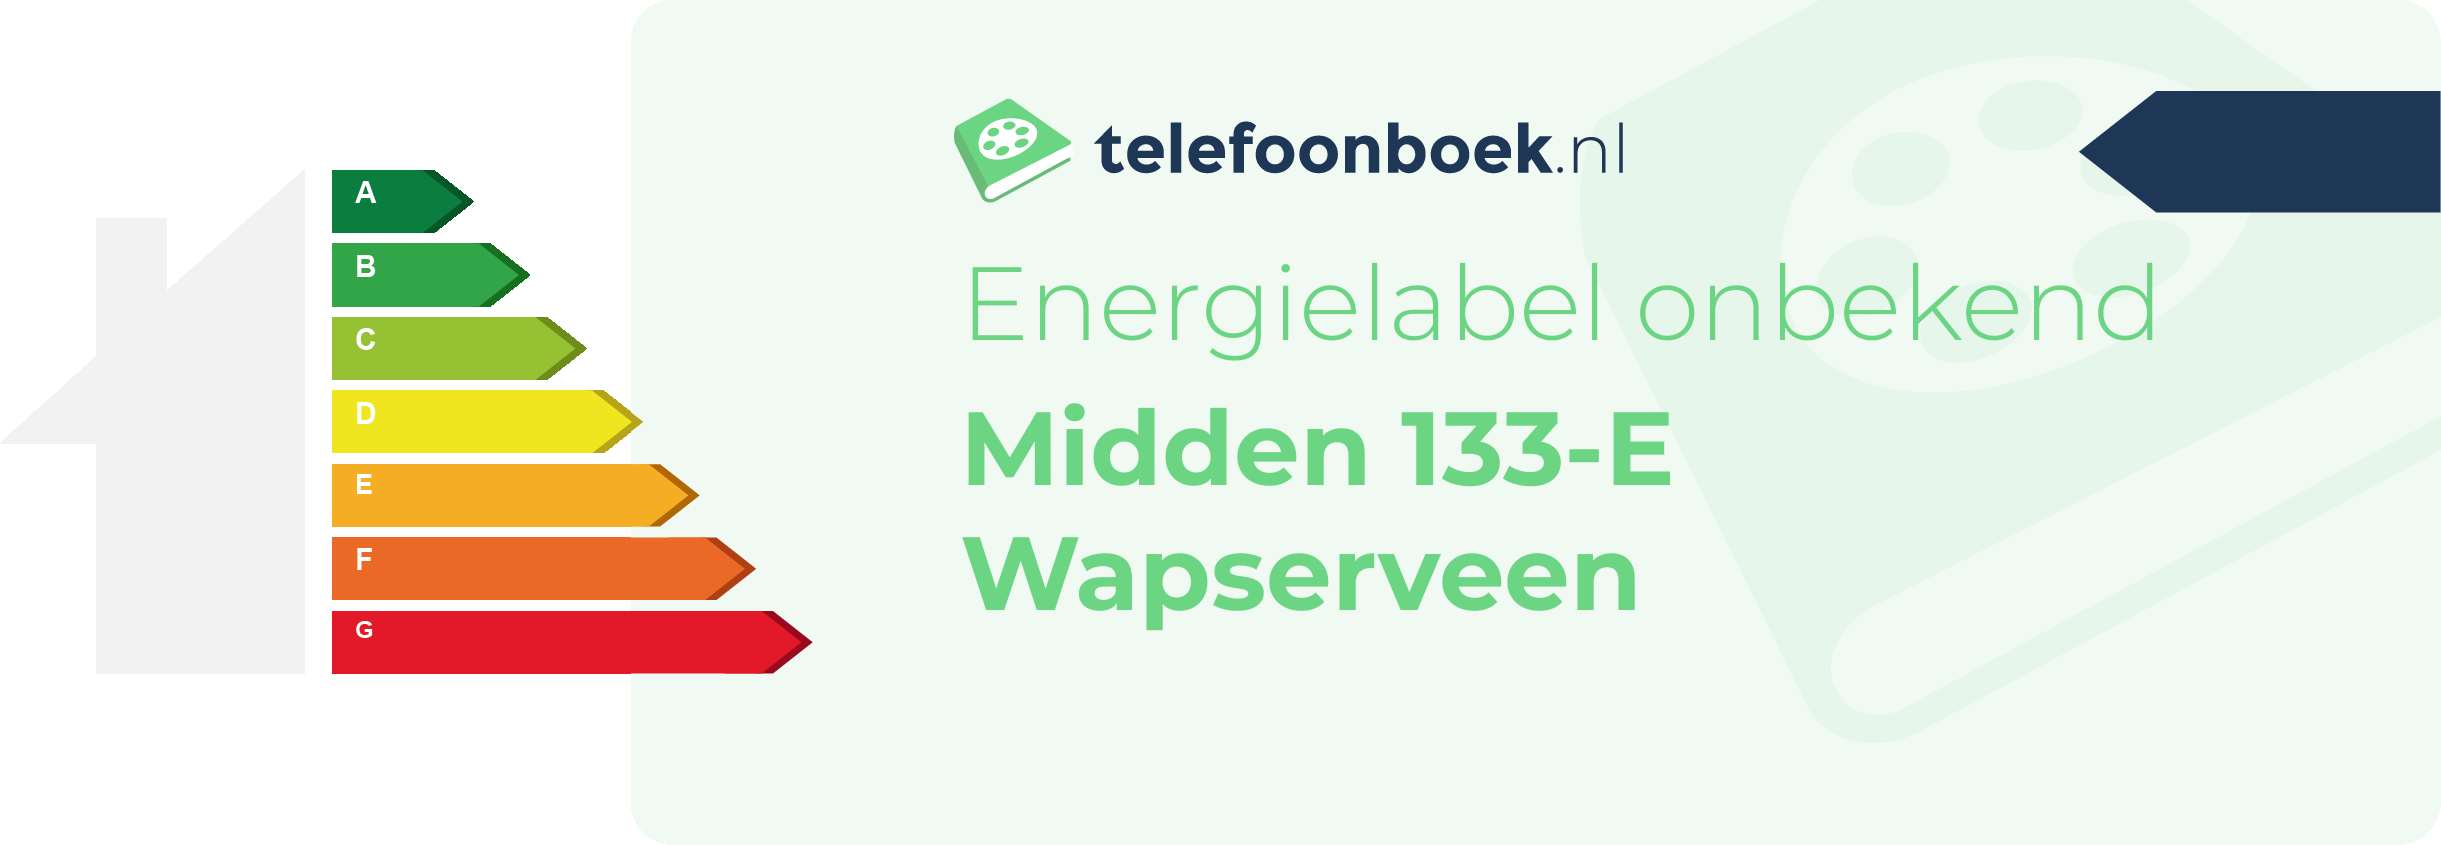 Energielabel Midden 133-E Wapserveen